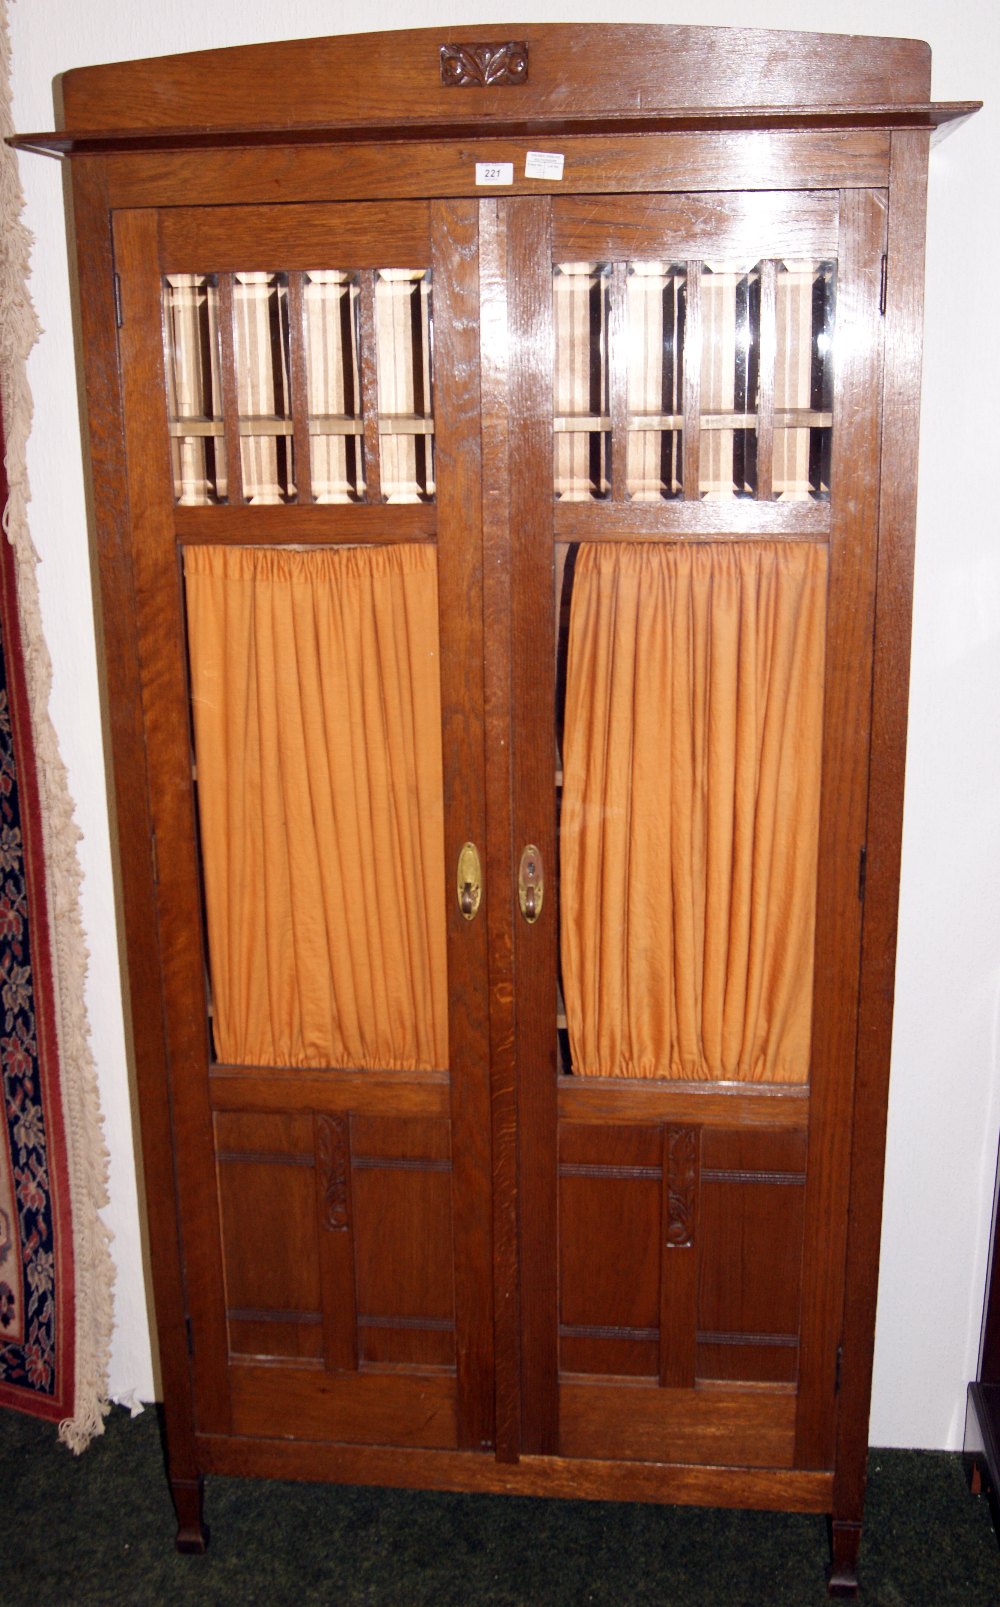 Two-door glazed oak shelved unit